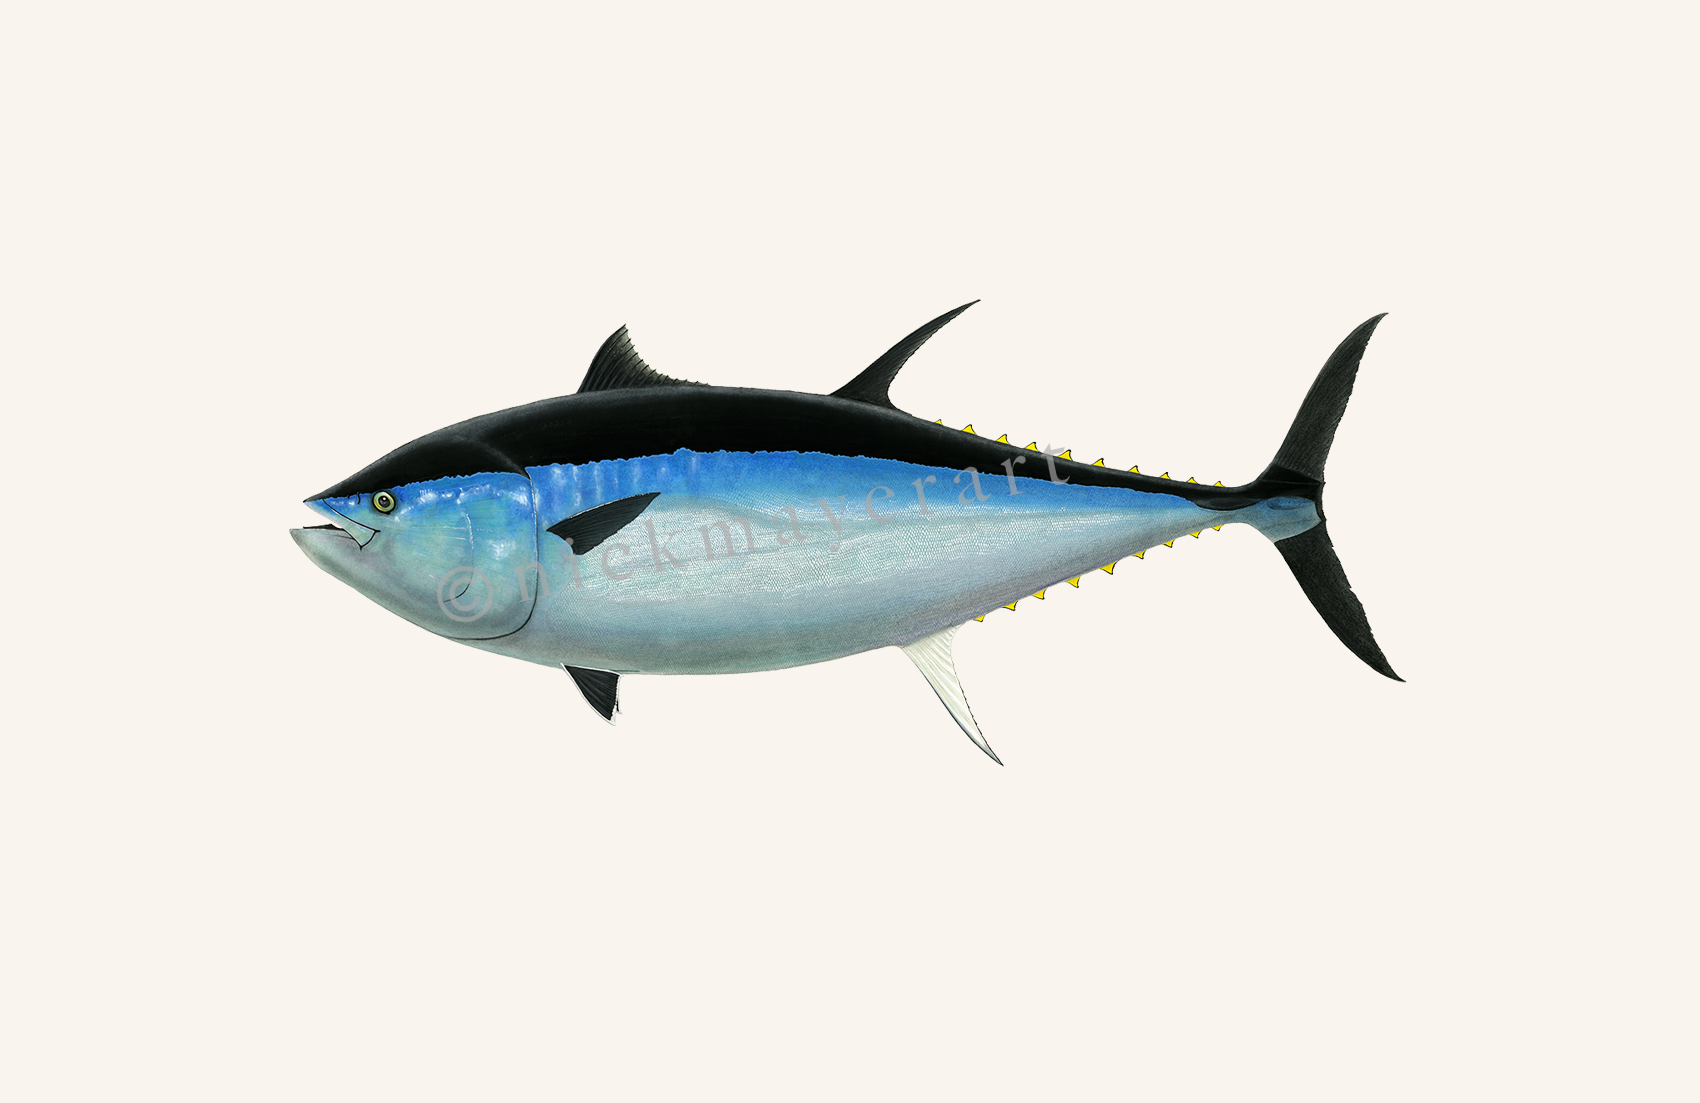 Giant Bluefin Tuna III Print